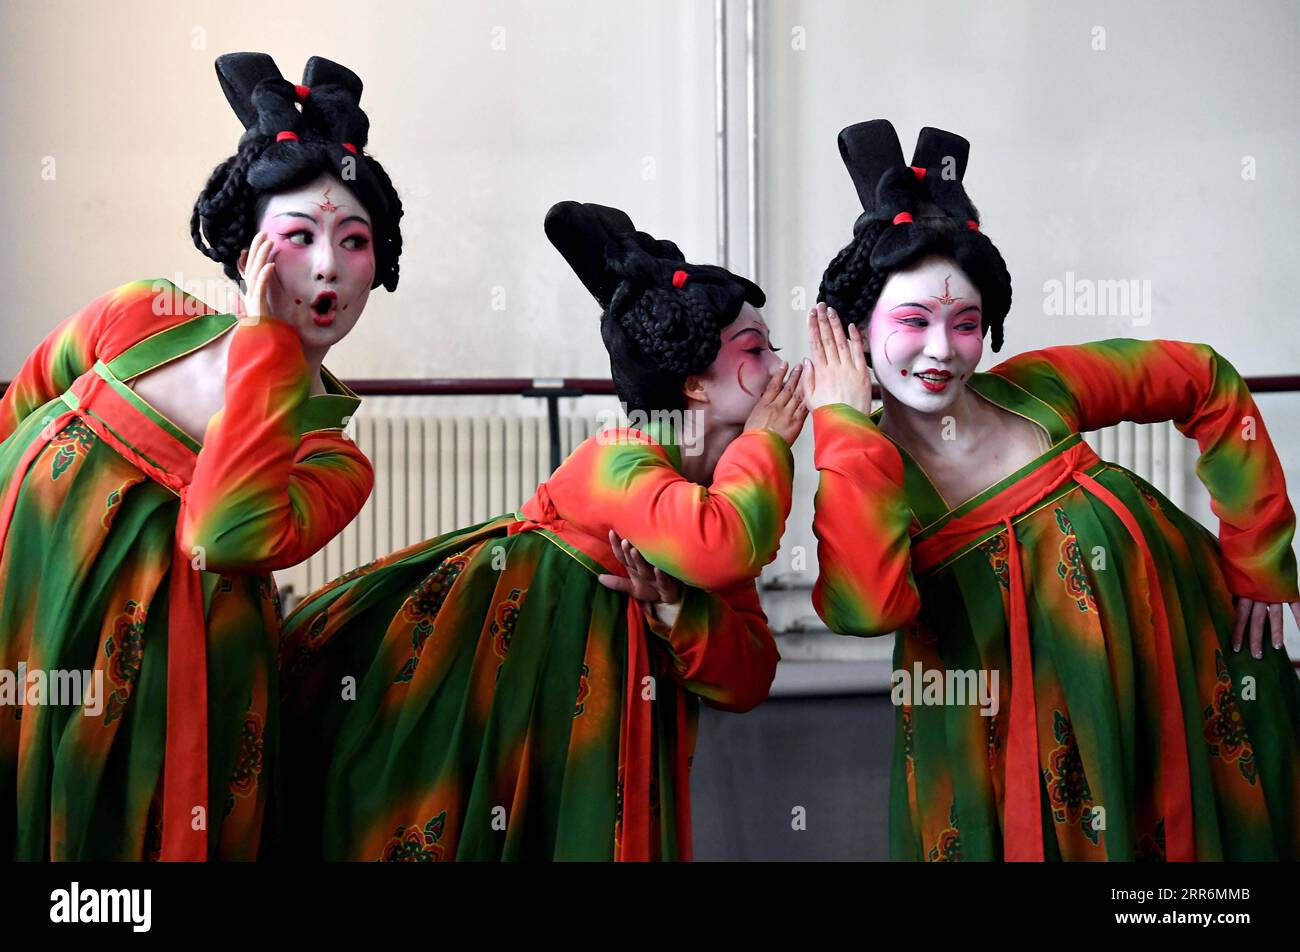 210222 -- ZHENGZHOU, 22 febbraio 2021 -- Dancers Practice at Zhengzhou Song and Dance Theater a Zhengzhou, provincia di Henan, Cina centrale, 20 febbraio 2021. Quattordici ballerini dello Zhengzhou Song and Dance Theater sono stati molto impegnati da quando la danza che hanno eseguito è diventata virale online. Lo spettacolo, chiamato Banquet of Tang Palace, è stato messo in scena al gala del Festival di Primavera della provincia di Henan. Brillantemente coreografata e recitata, la danza ha quasi portato in vita antiche figurine danzanti della dinastia Tang 618-907. Lo spettacolo Banquet of Tang Palace, ispirato alle statuette danzanti esposte in Foto Stock